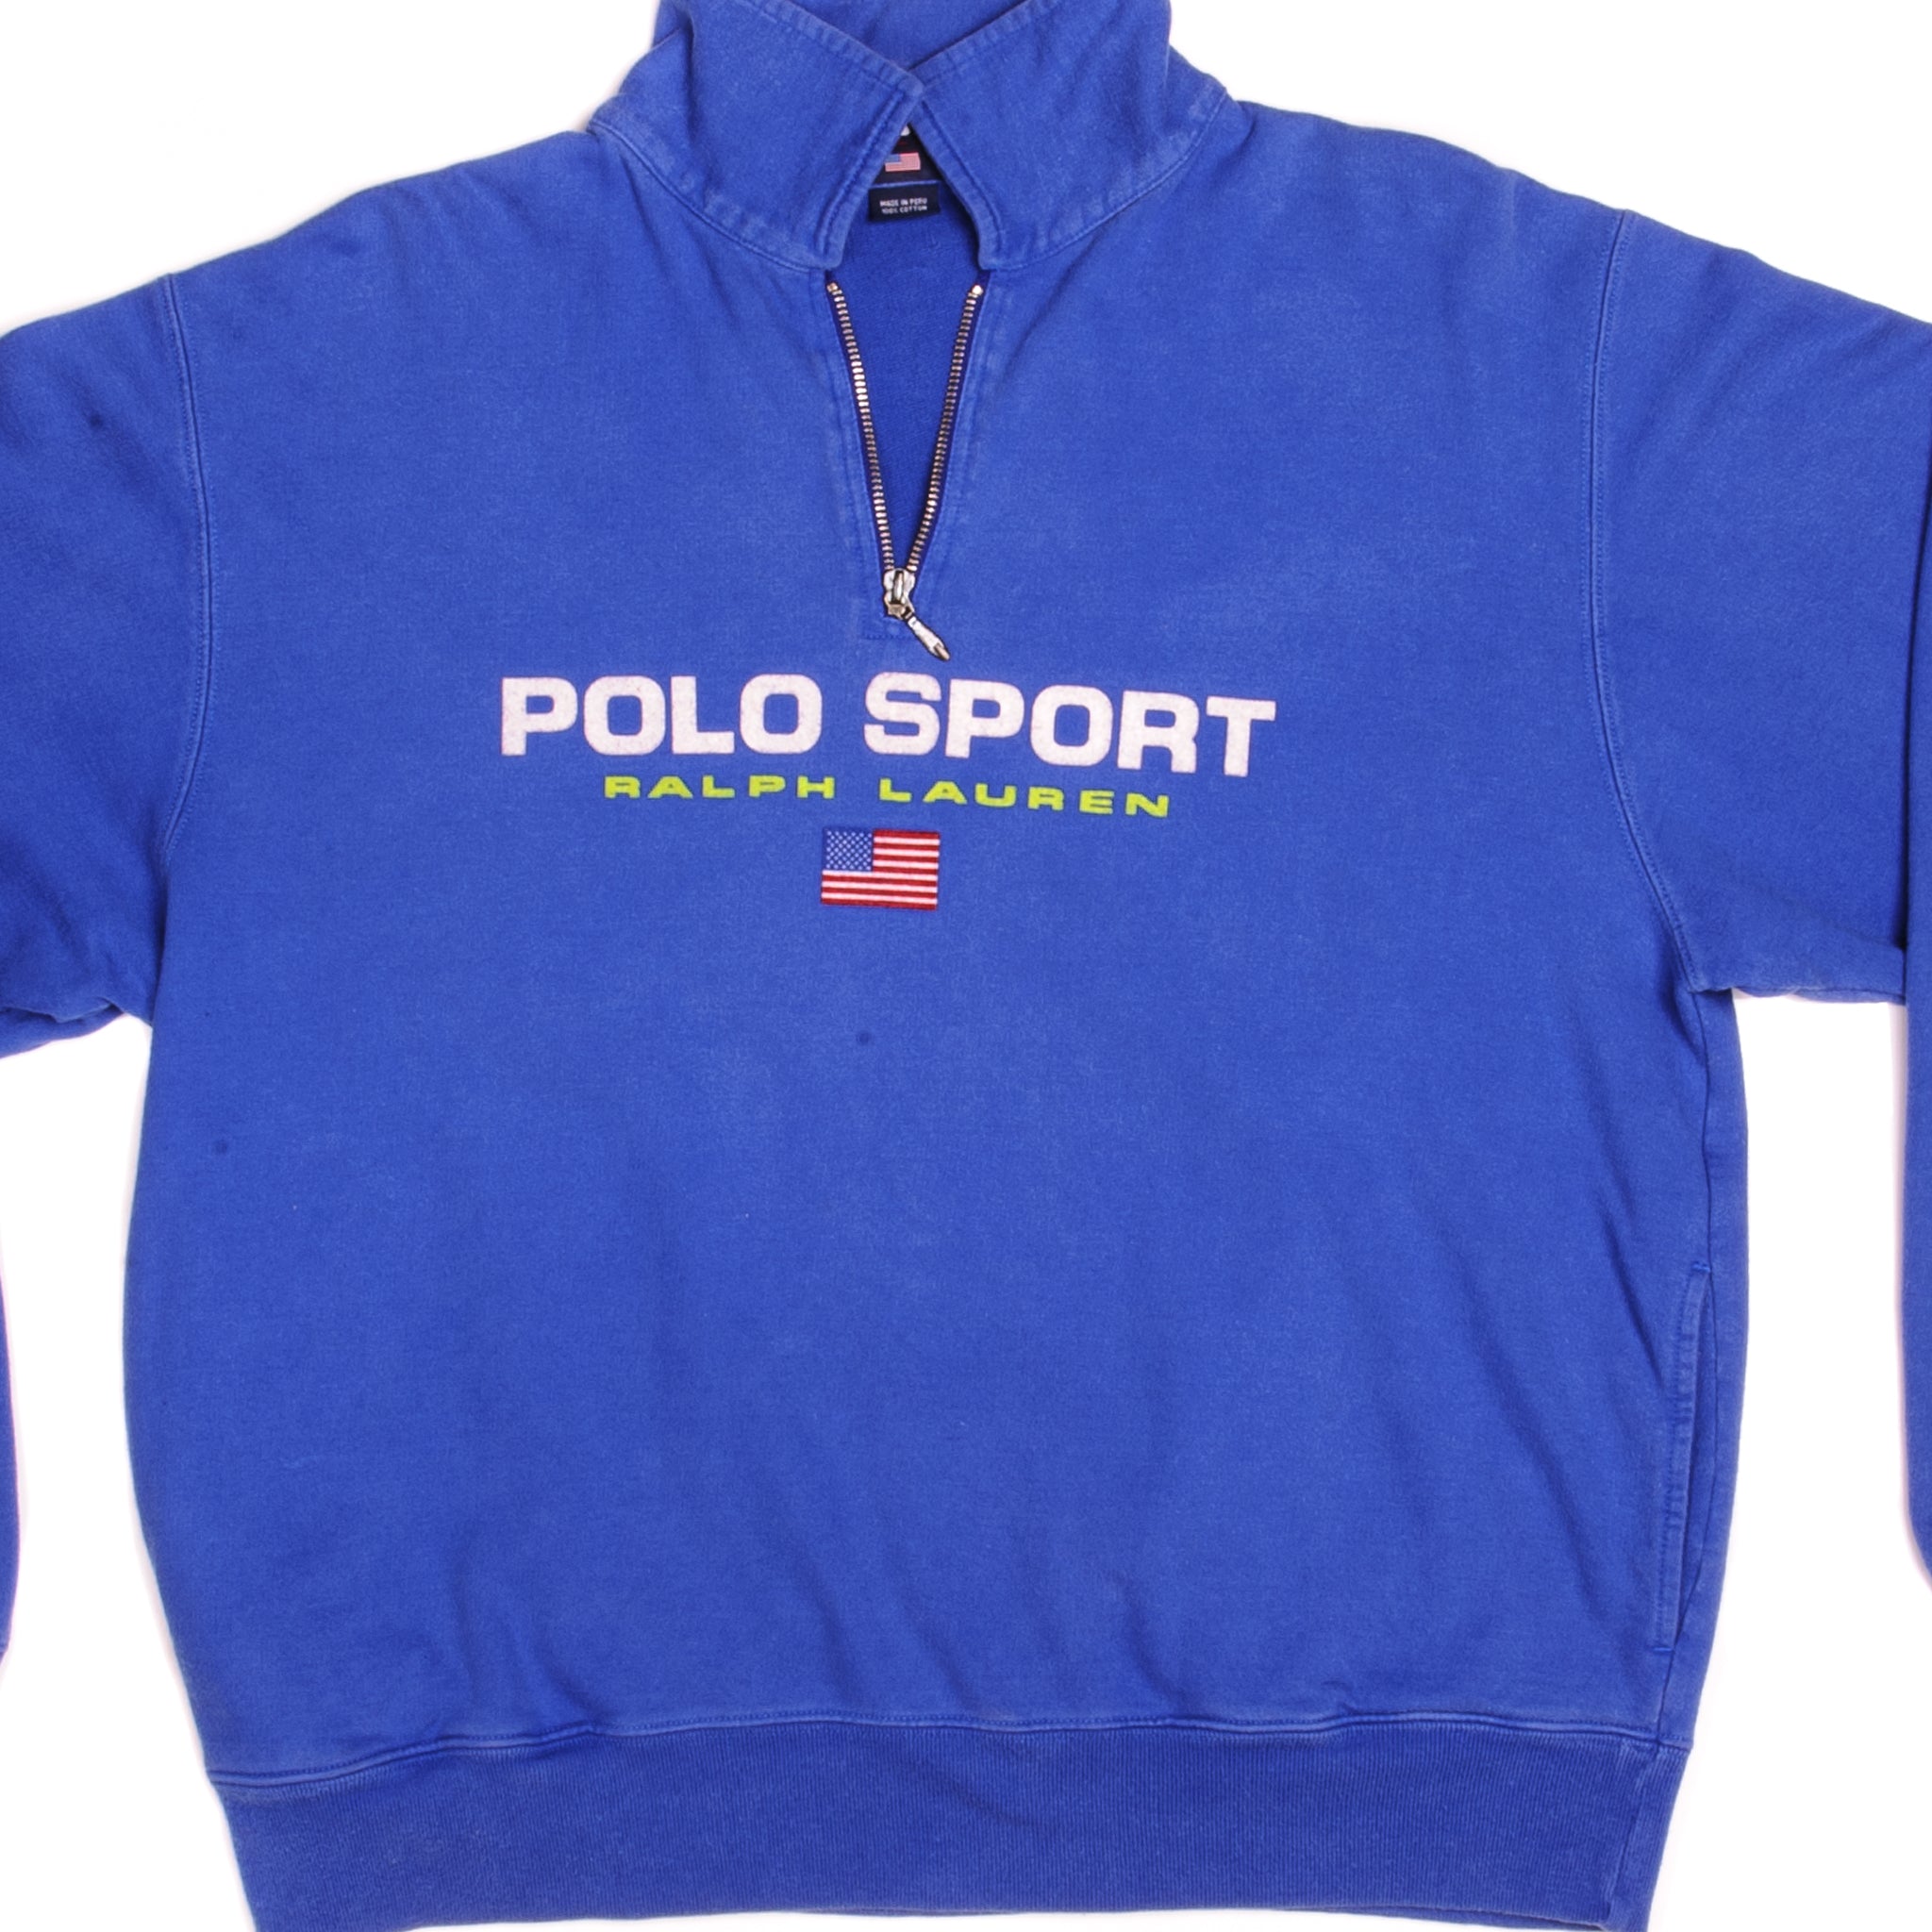 Polo Sport Ralph Lauren Vintage Sweatshirt